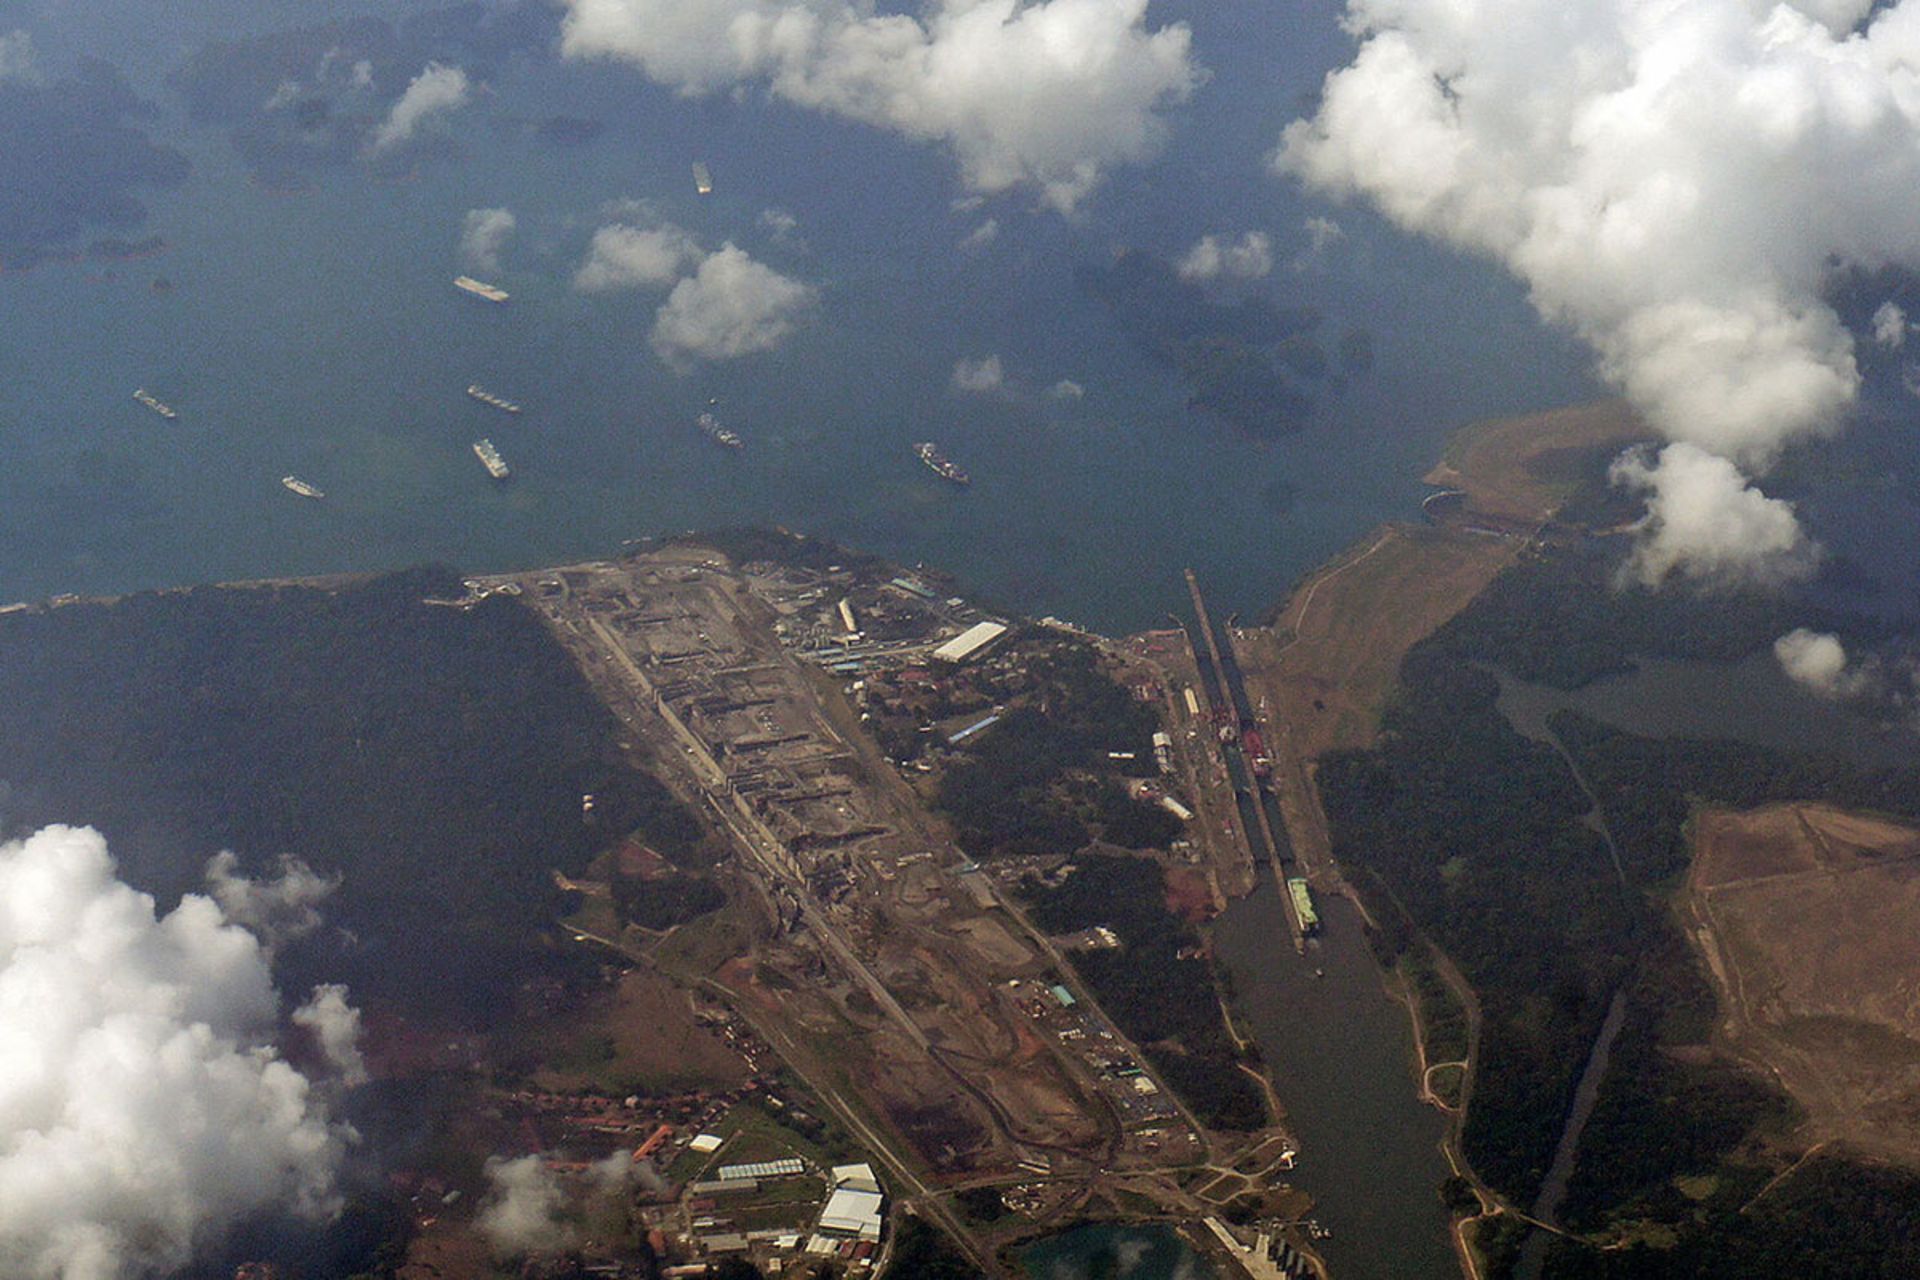 تصویر هوایی کانال پاناما / Panama Canal